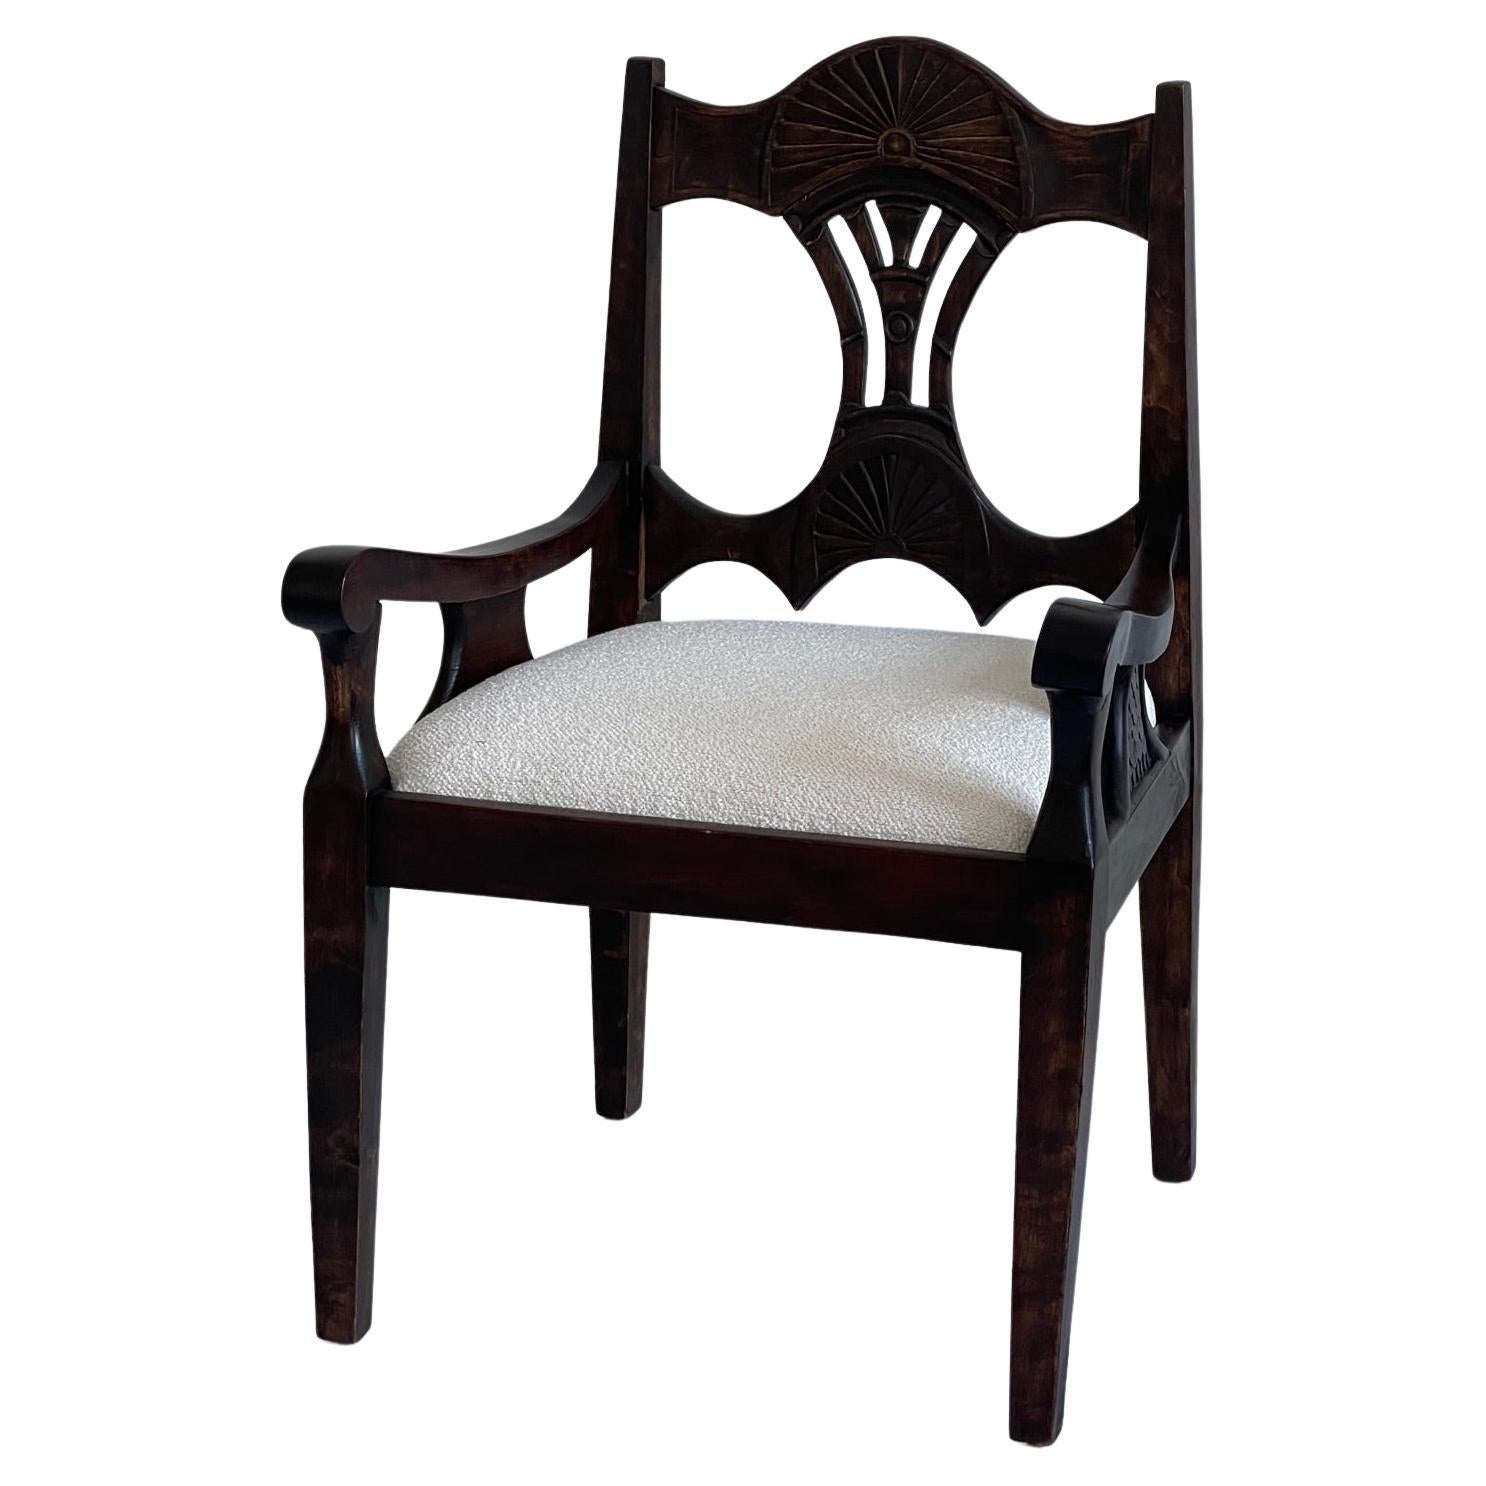 Elegant fauteuil scandinave Art Nouveau du 19ème siècle en chêne massif teinté, tapissé d'un tissu bouclette de première qualité. 

Malgré son âge, ce fauteuil est dans un état remarquable, témoignant de la qualité des matériaux et de